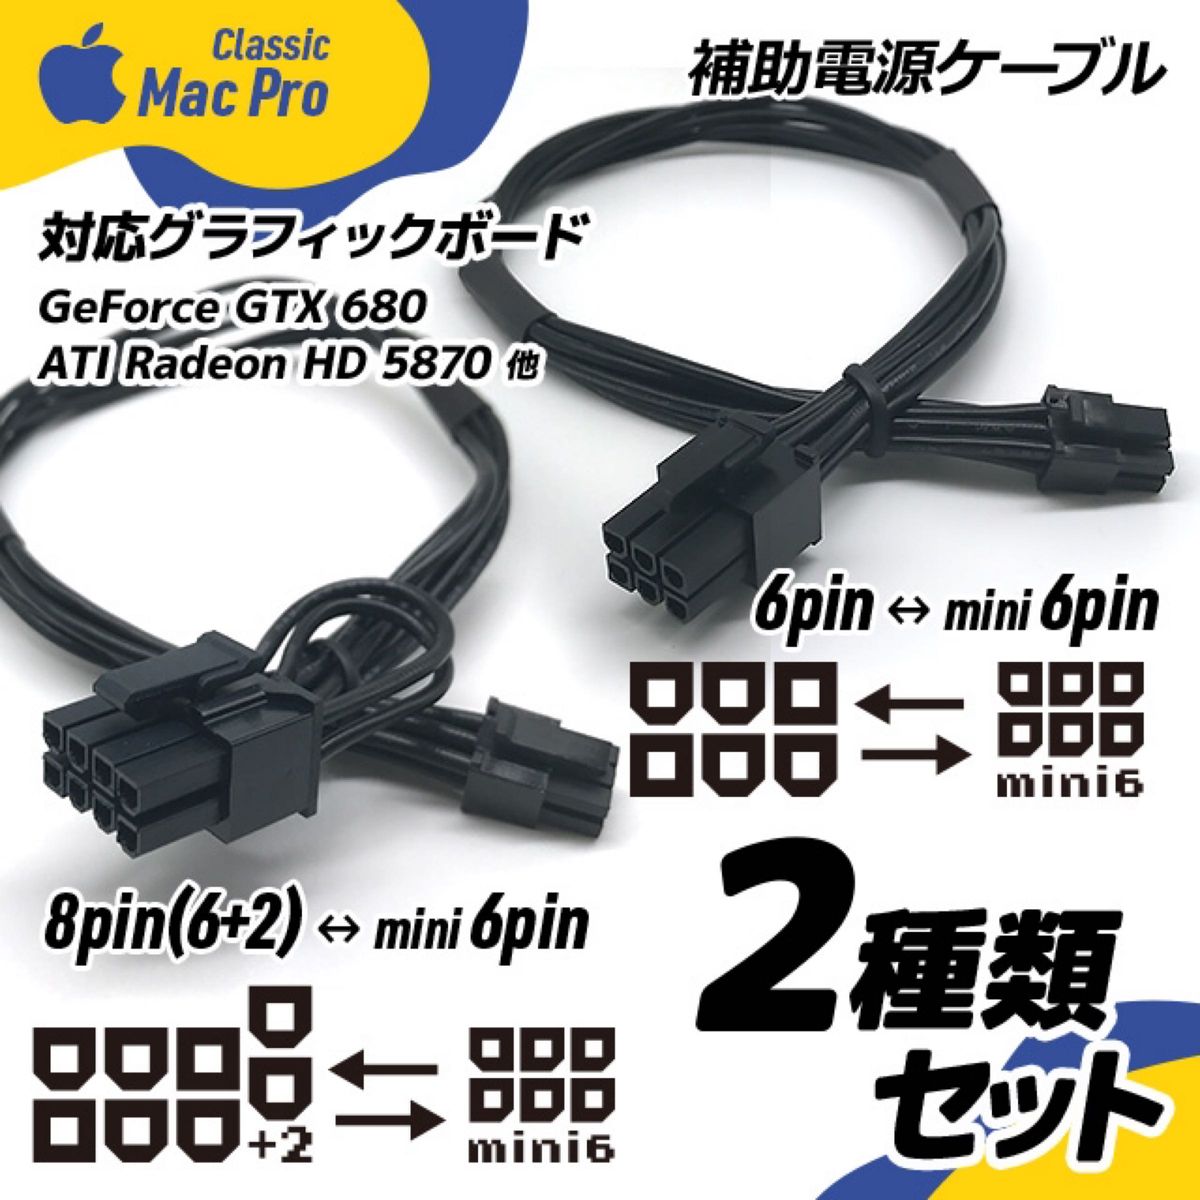 2種類セット 補助電源ケーブル 8ーミニ6ピン+6ーミニ6ピン Mac Pro